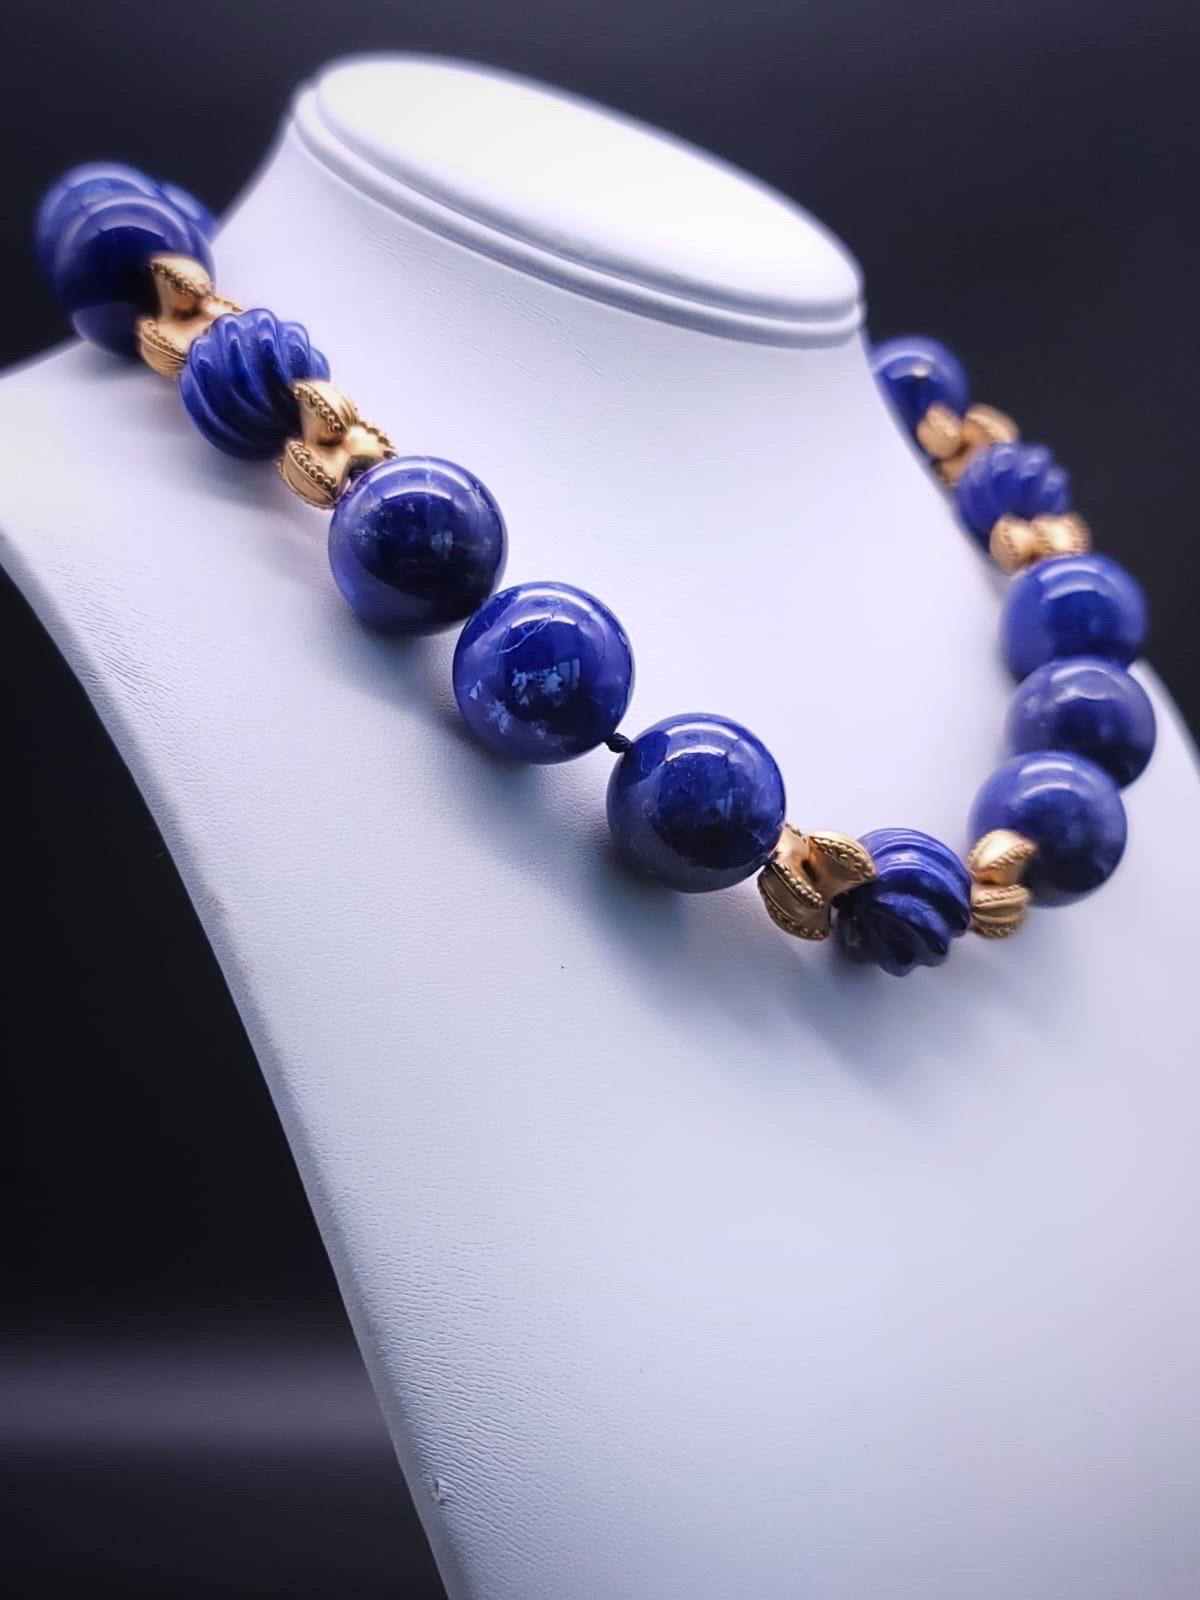 A.Jeschel Large Lapis Lazuli with vermeil knots necklace. 8